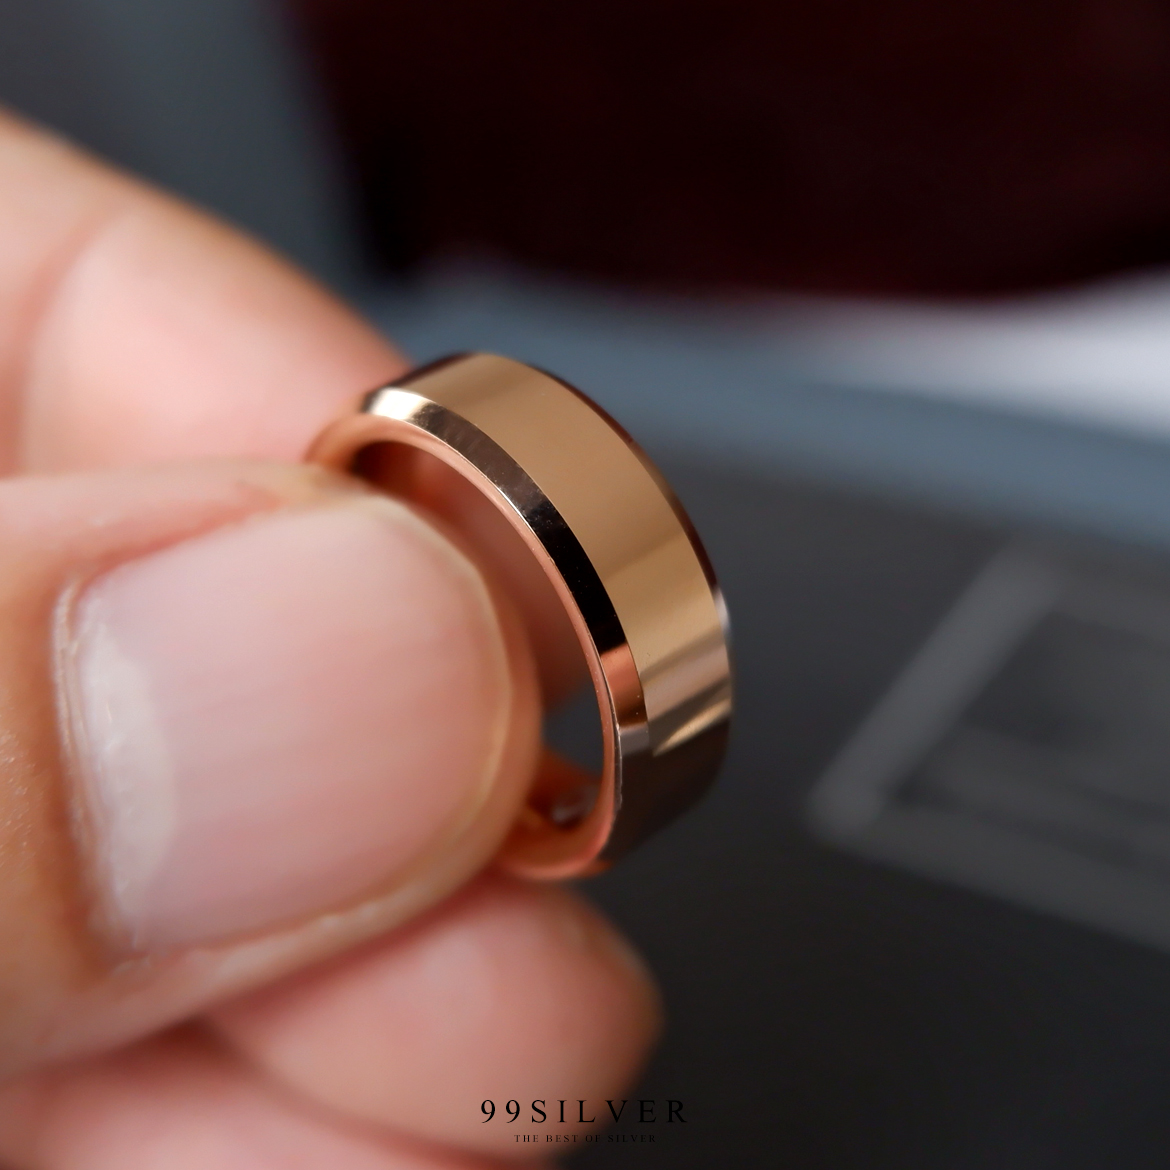 แหวน Tungsten แท้หน้ากว้าง 6 มิลลิเมตร ขอบลดมุมตัดสวยงาม เคลือบพิ้งค์โกล